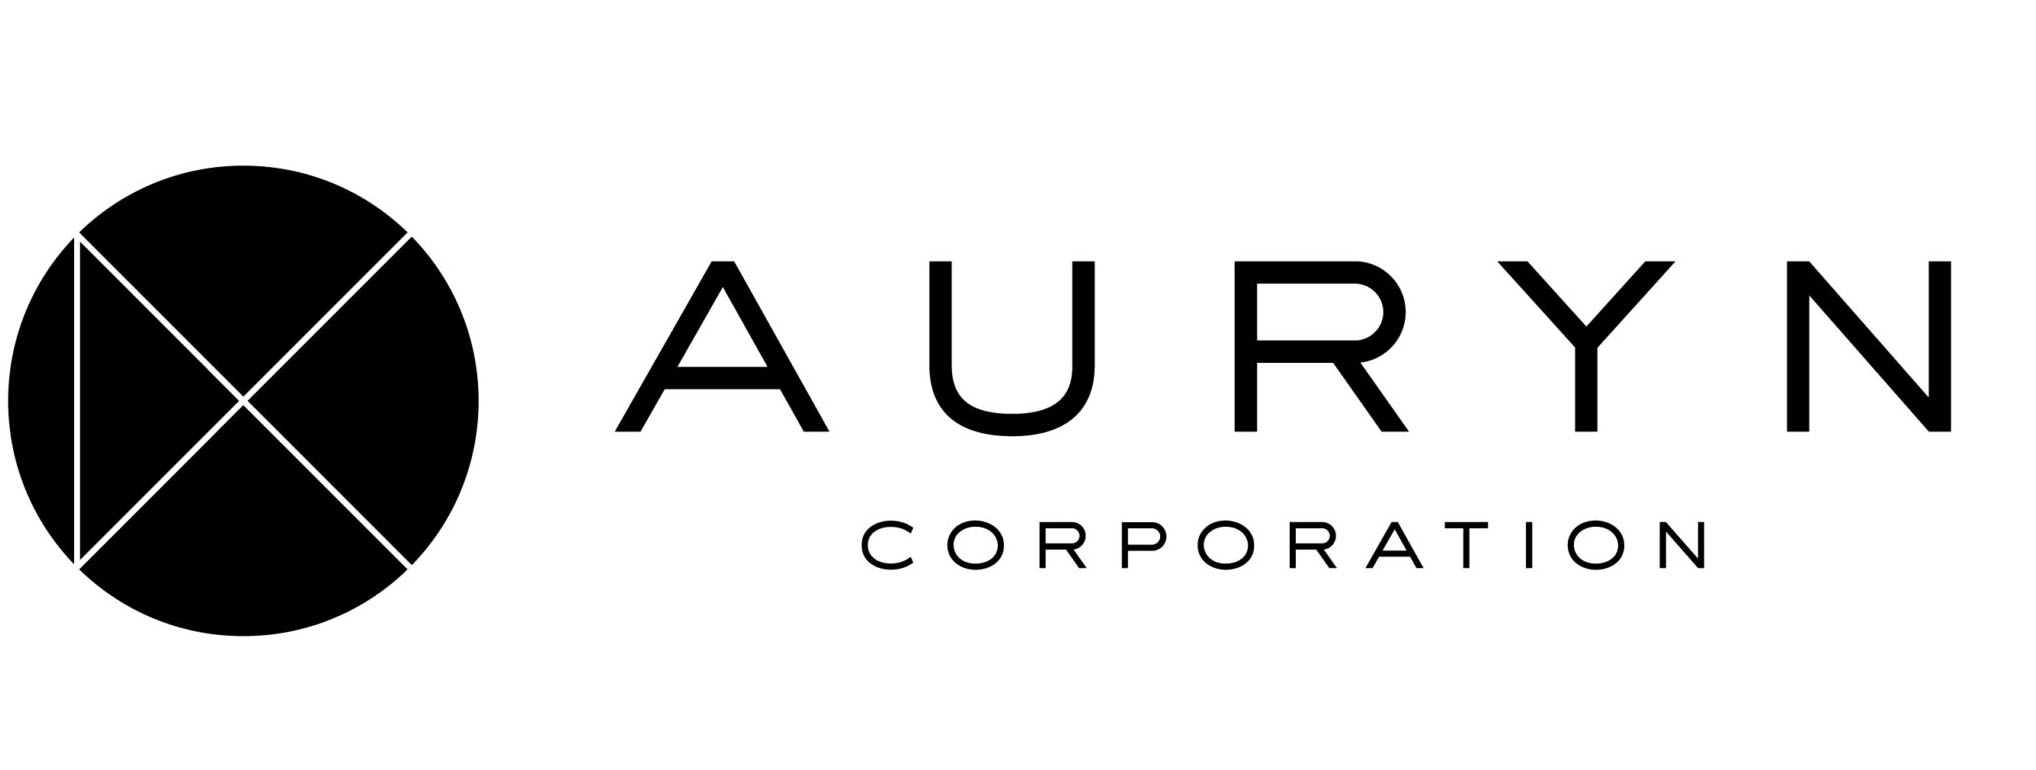 auryn corporation